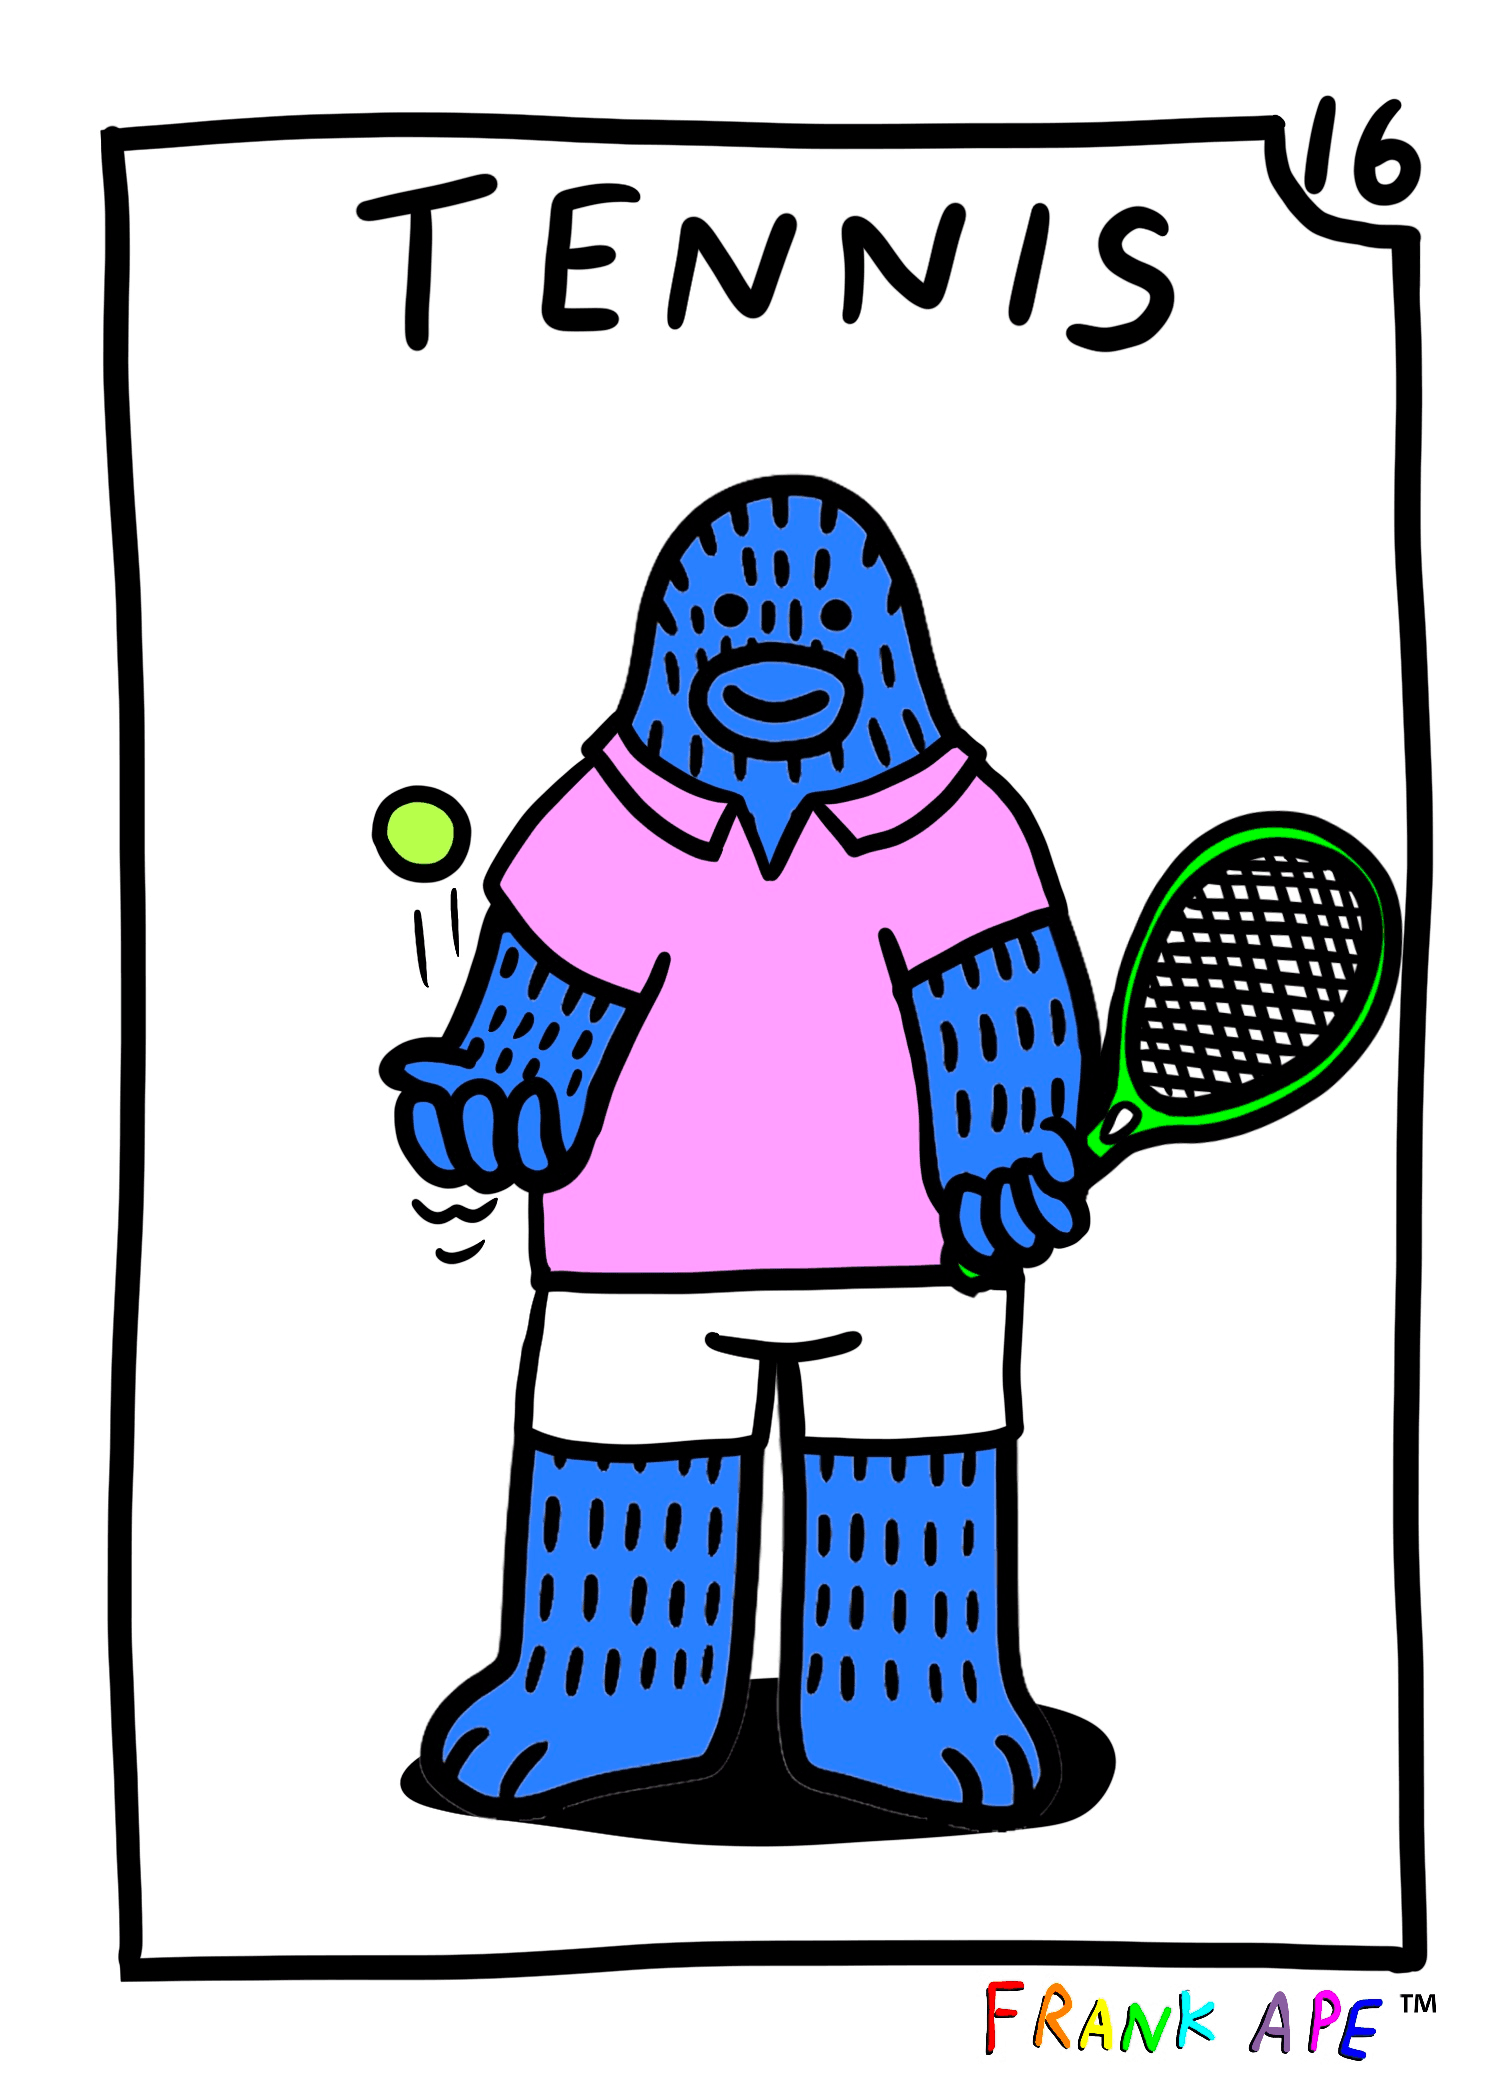 Frank Friends #16 - Tennis